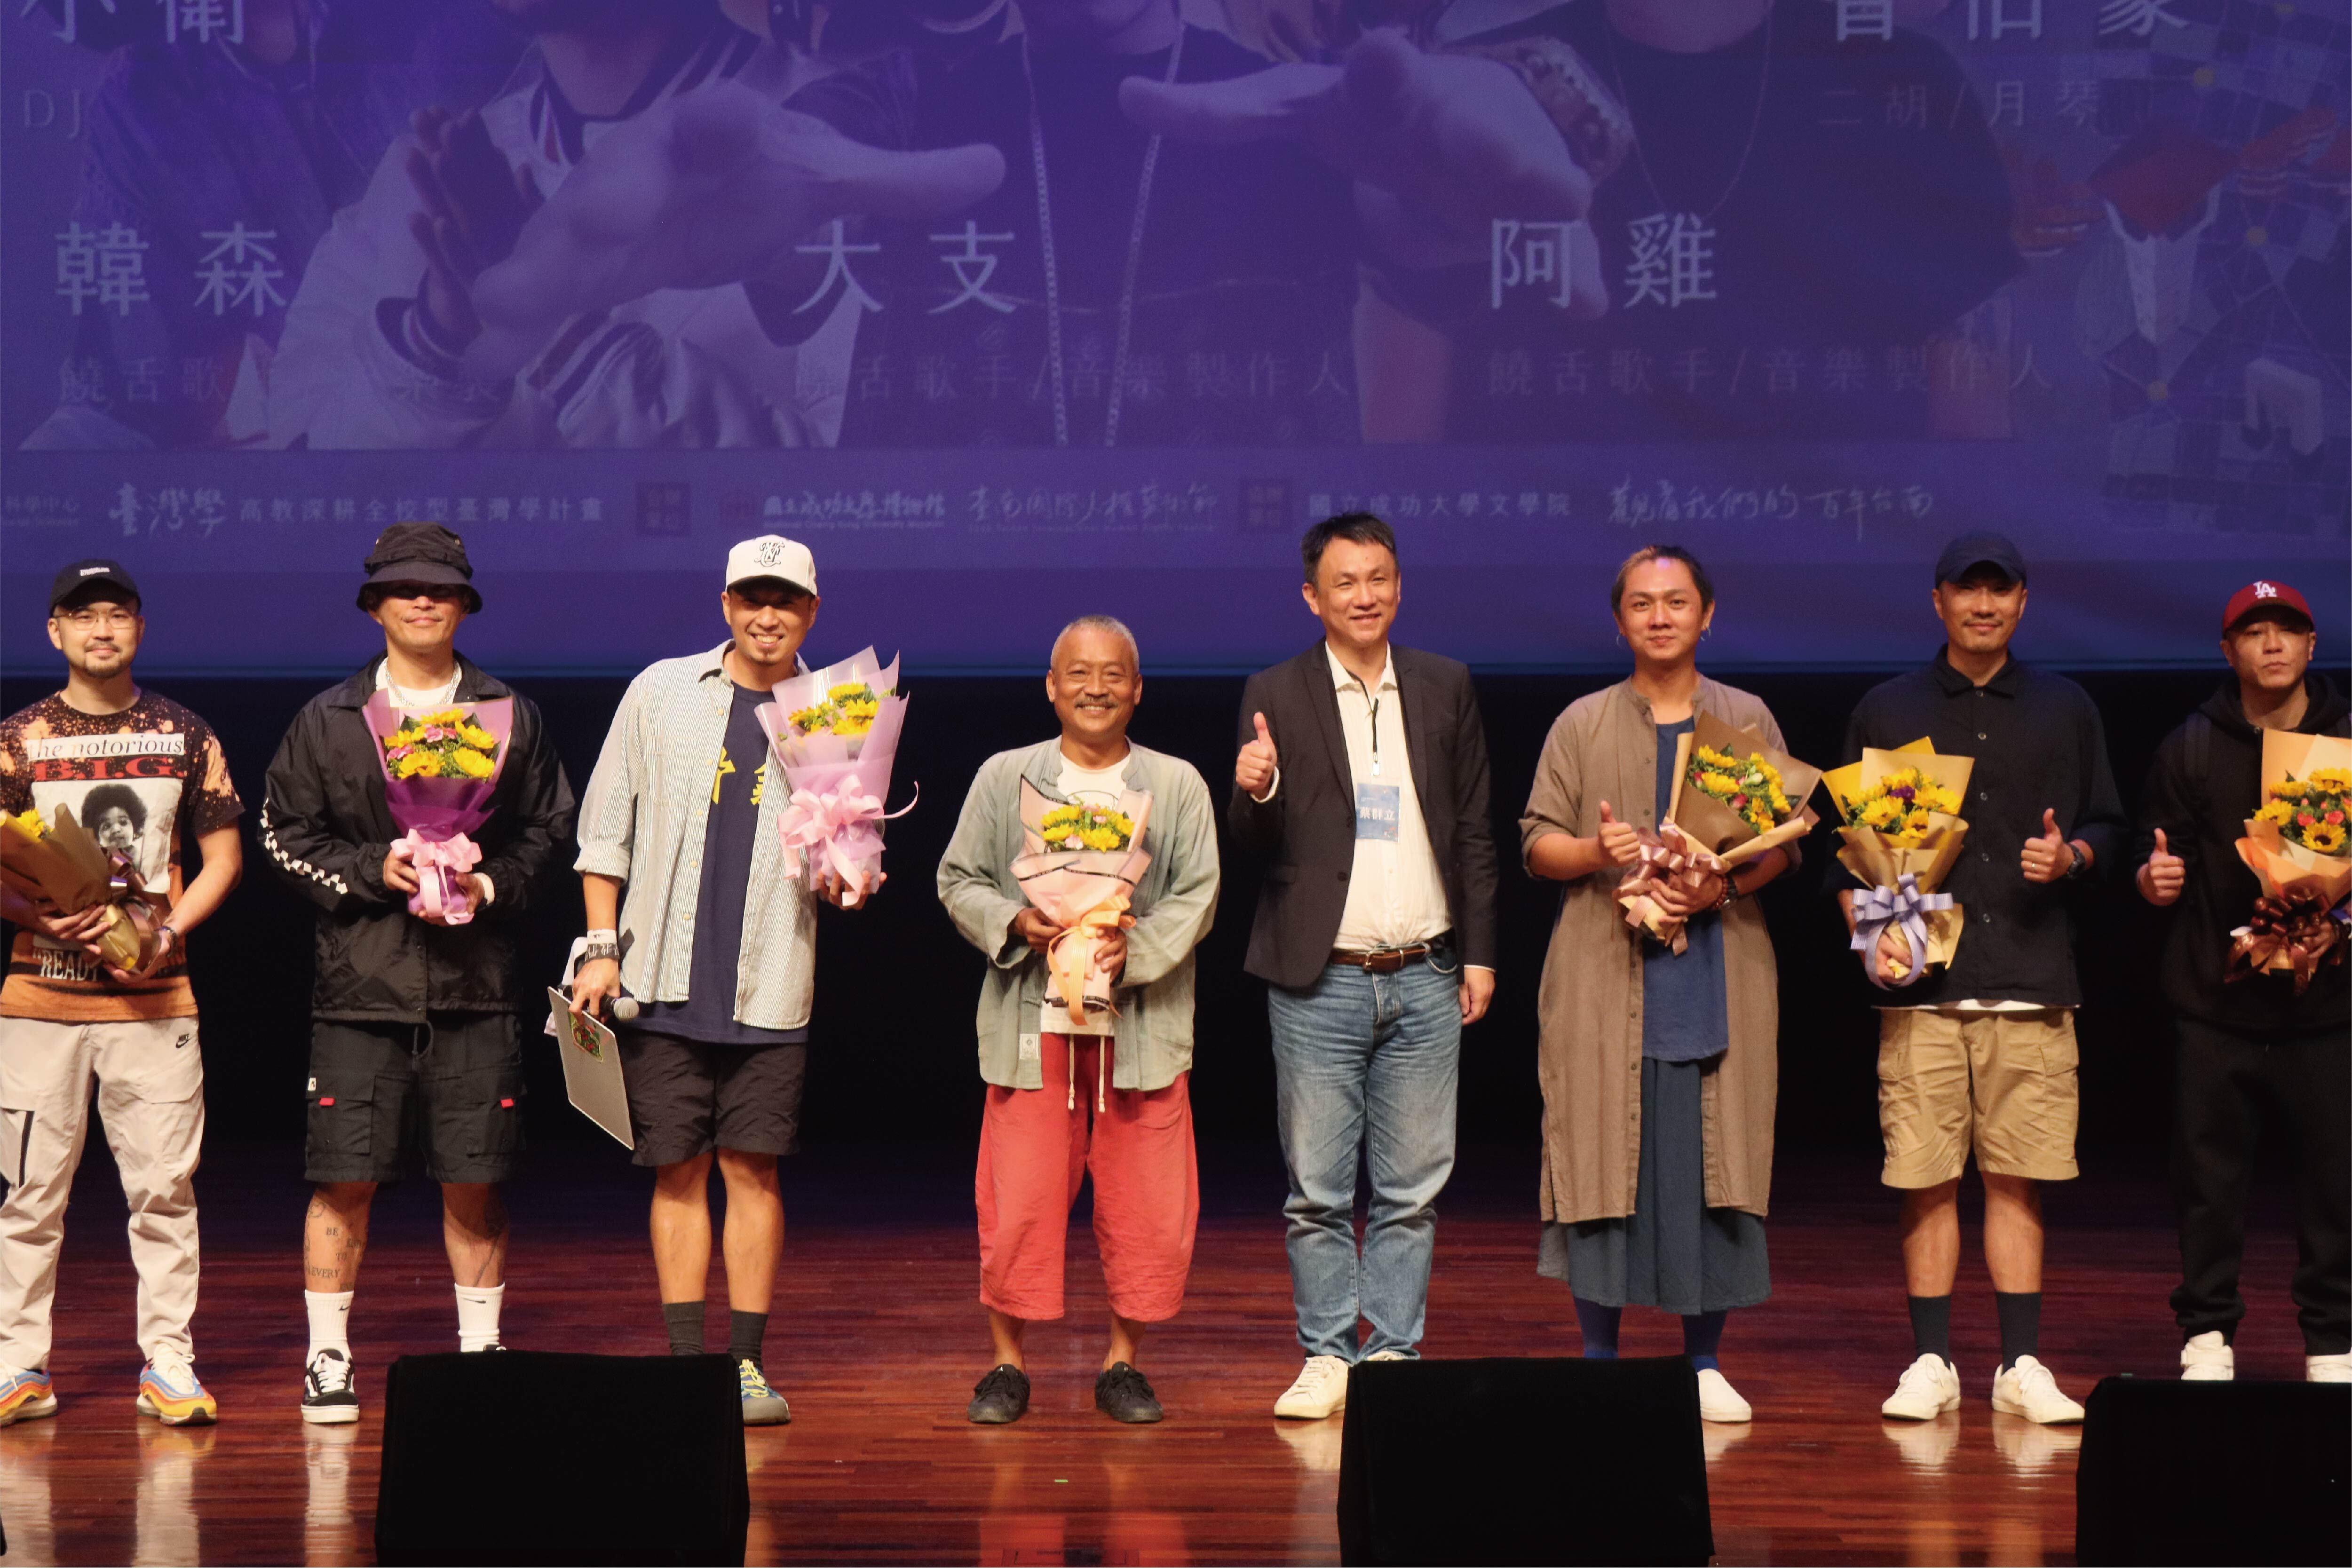 「臺南 400」演唱會邀請４位與台南有著深厚連結的音樂人—韓森、阿雞 GLOJ、大支、謝銘祐參與演出